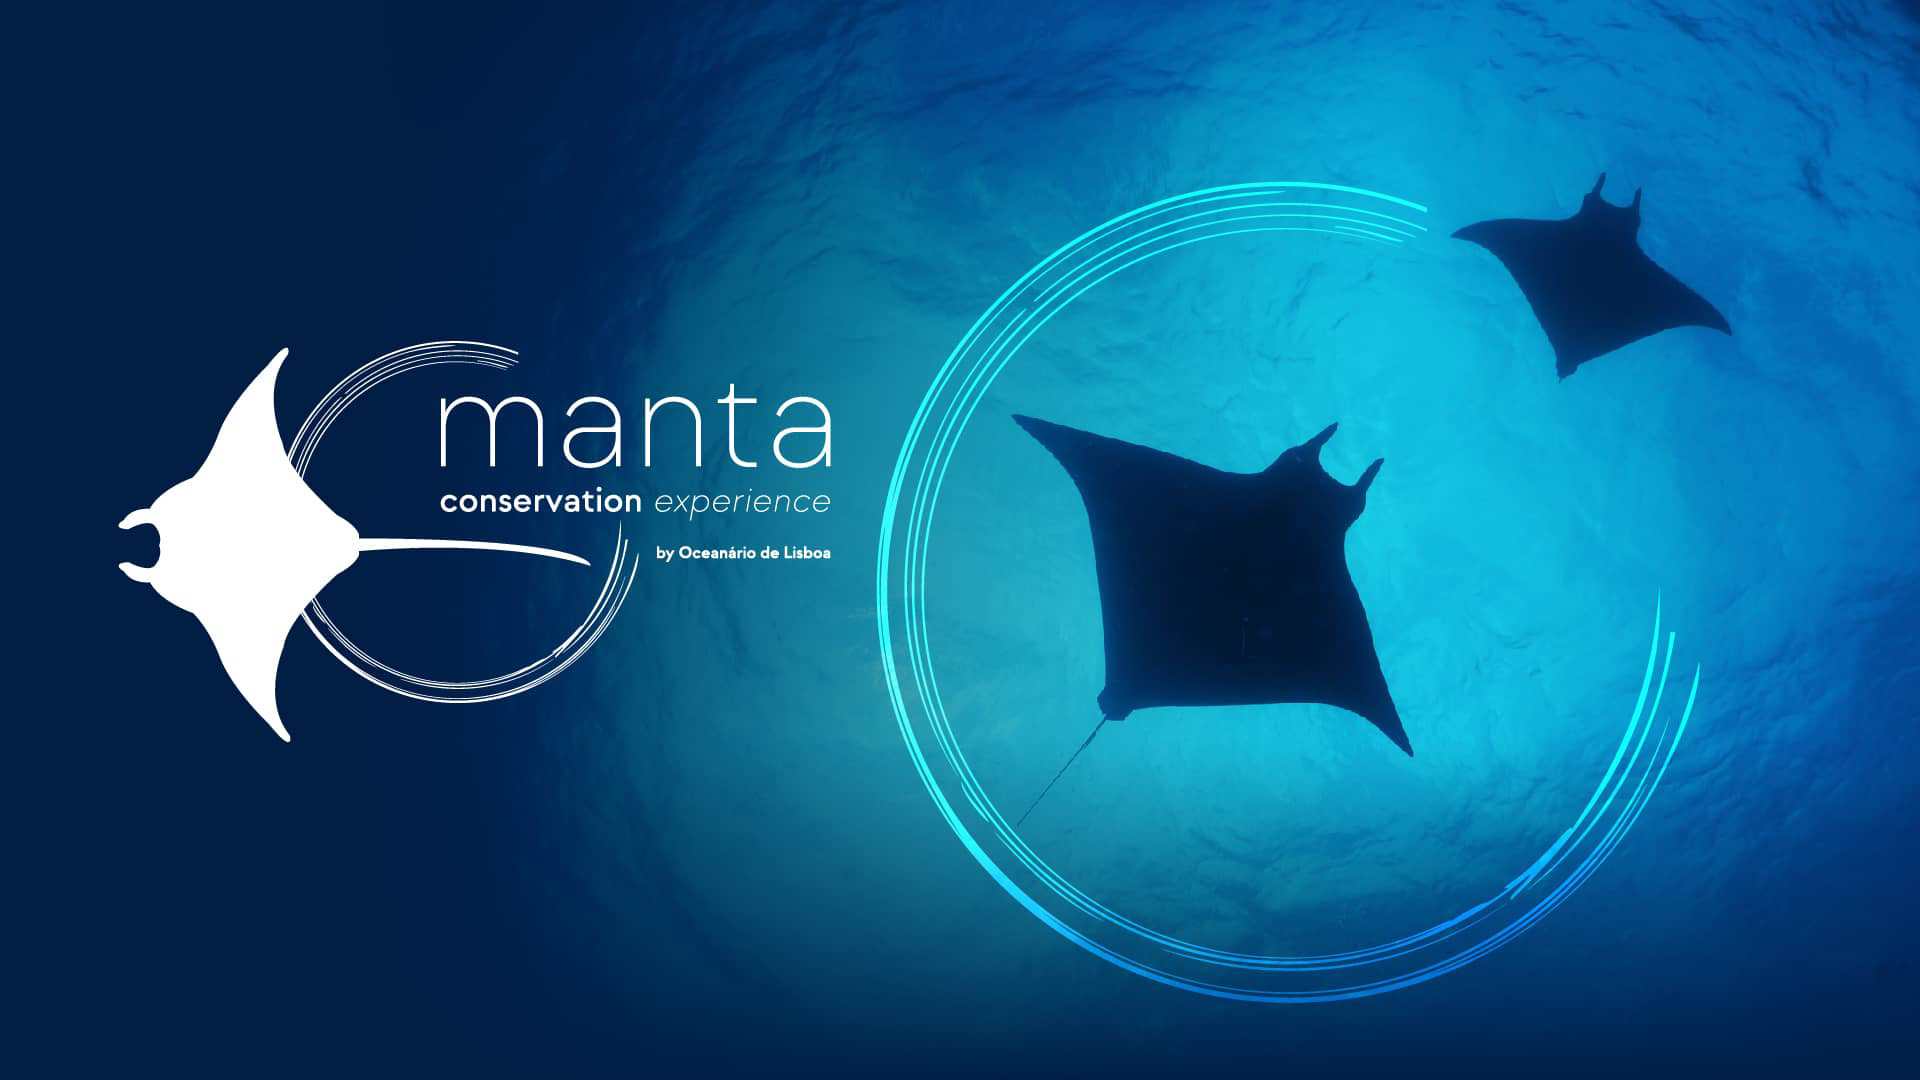 manta conservation